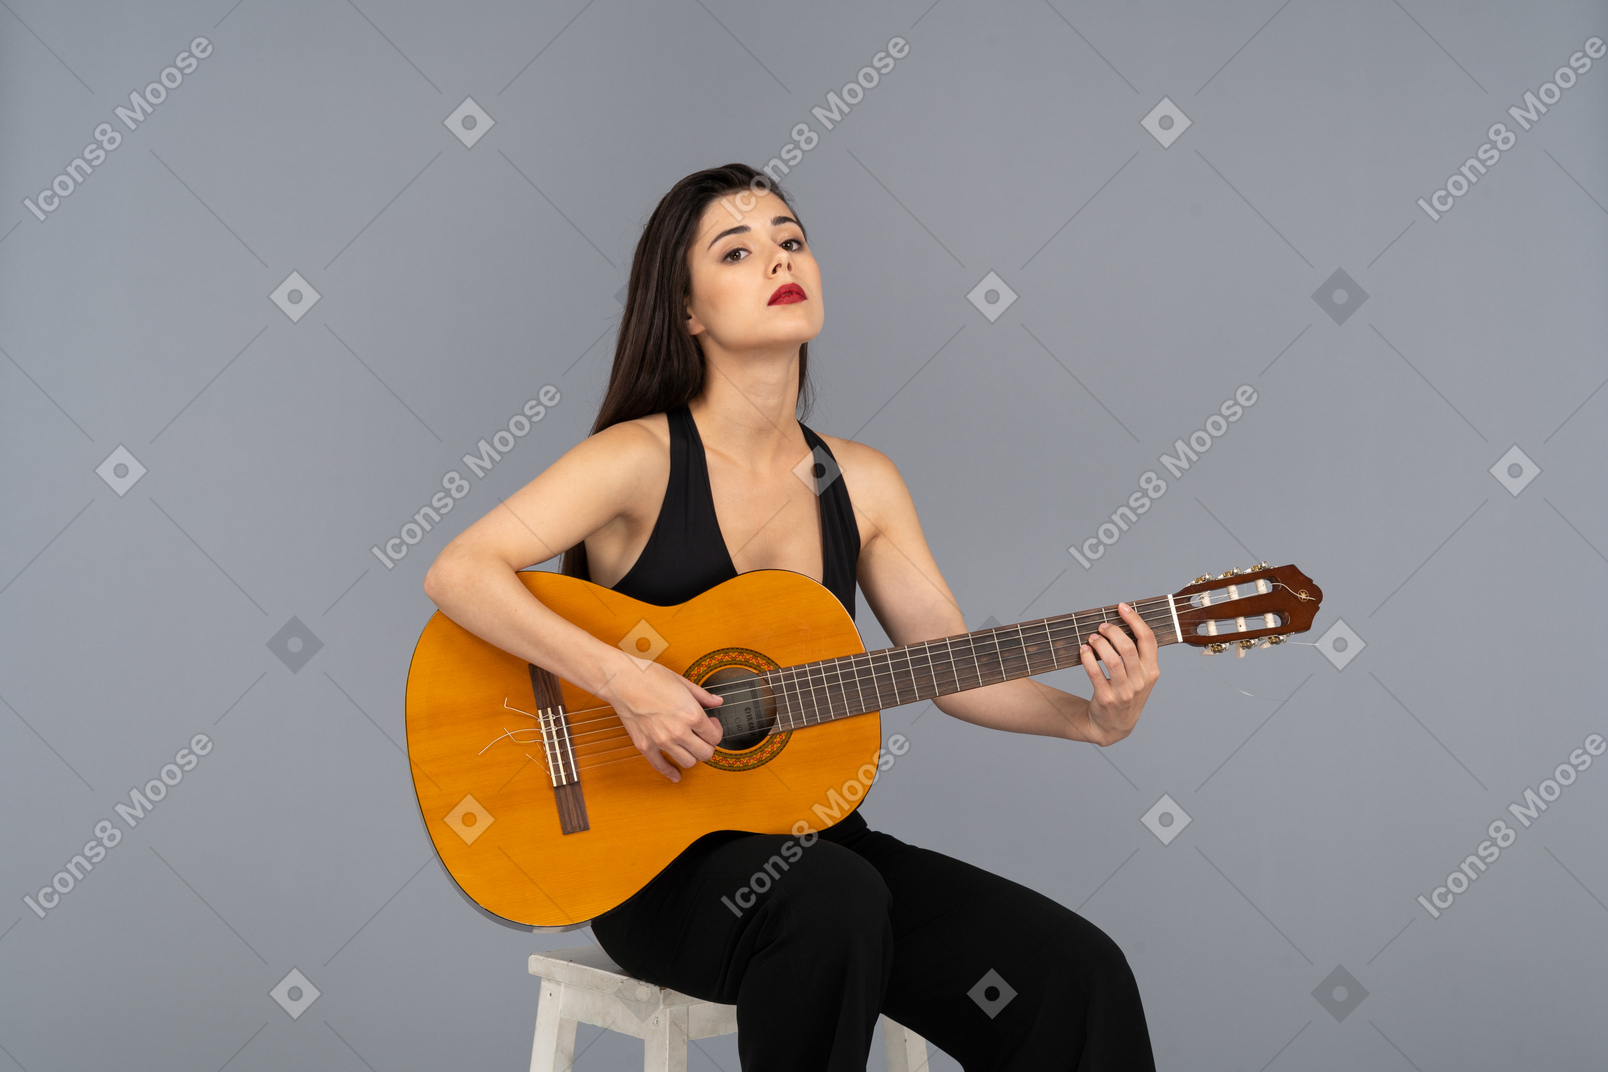 Vista frontal de uma jovem sentada de terno preto segurando o violão e levantando a cabeça